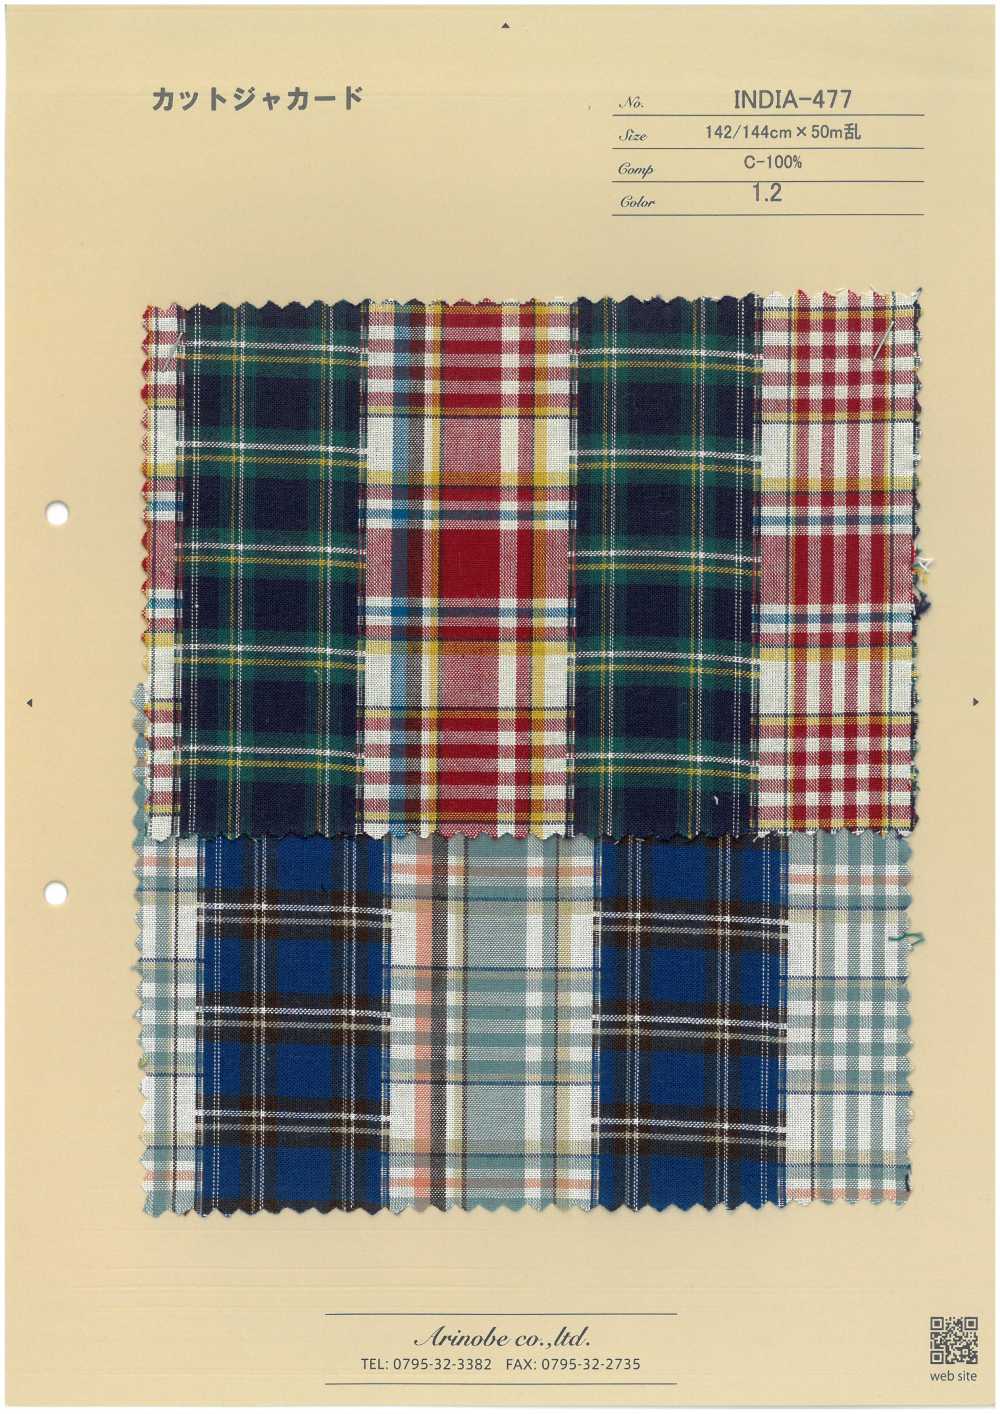 INDIA-477 Geschnittener Jacquard[Textilgewebe] ARINOBE CO., LTD.